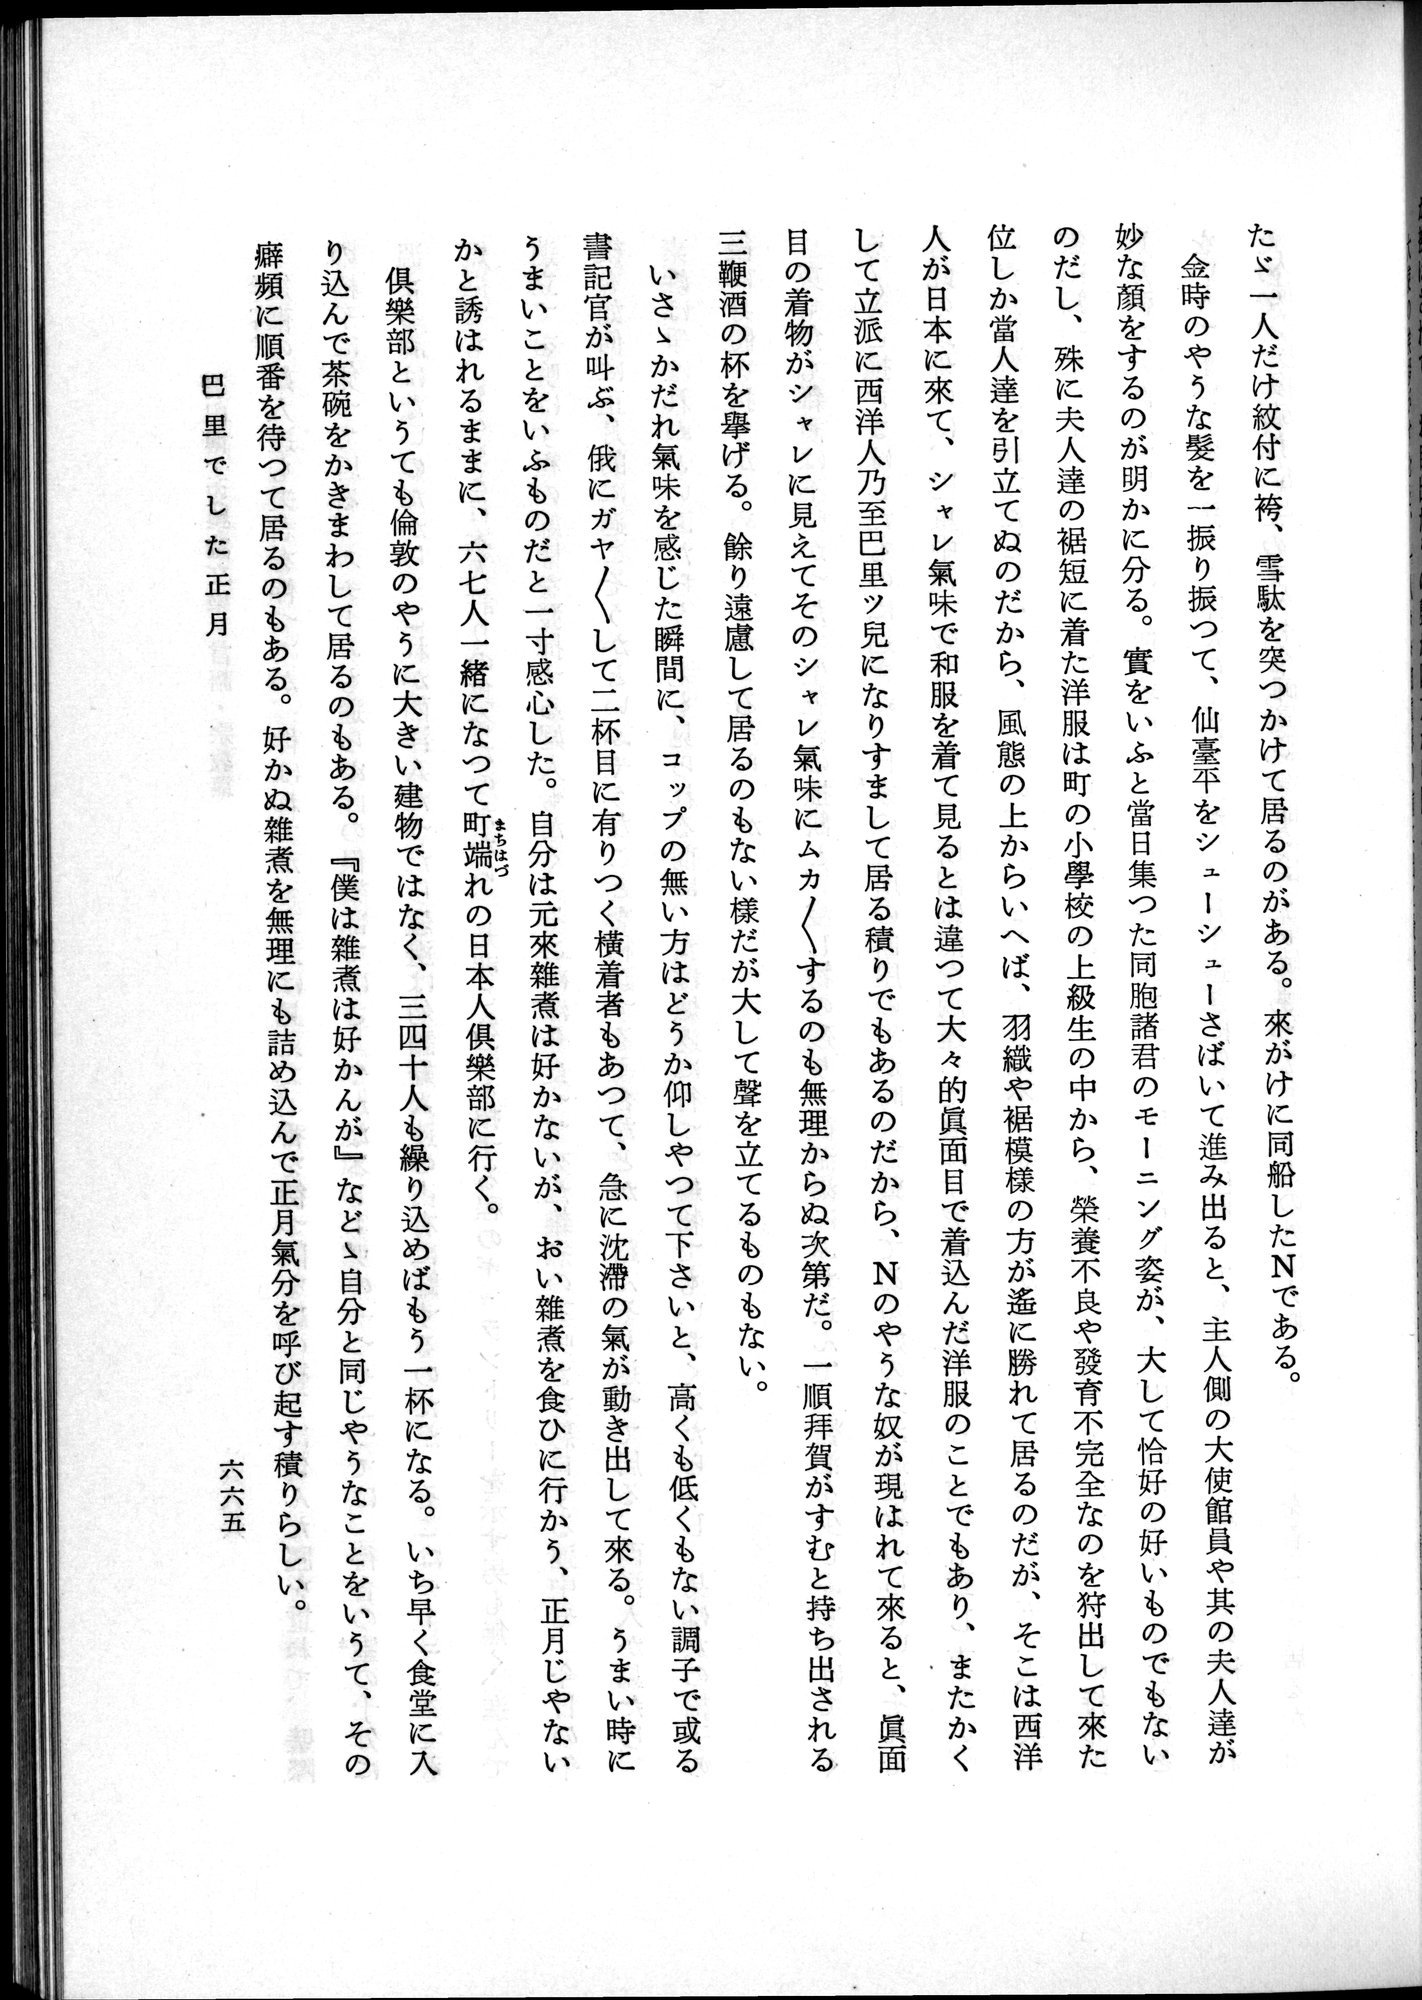 羽田博士史学論文集 : vol.2 / Page 729 (Grayscale High Resolution Image)